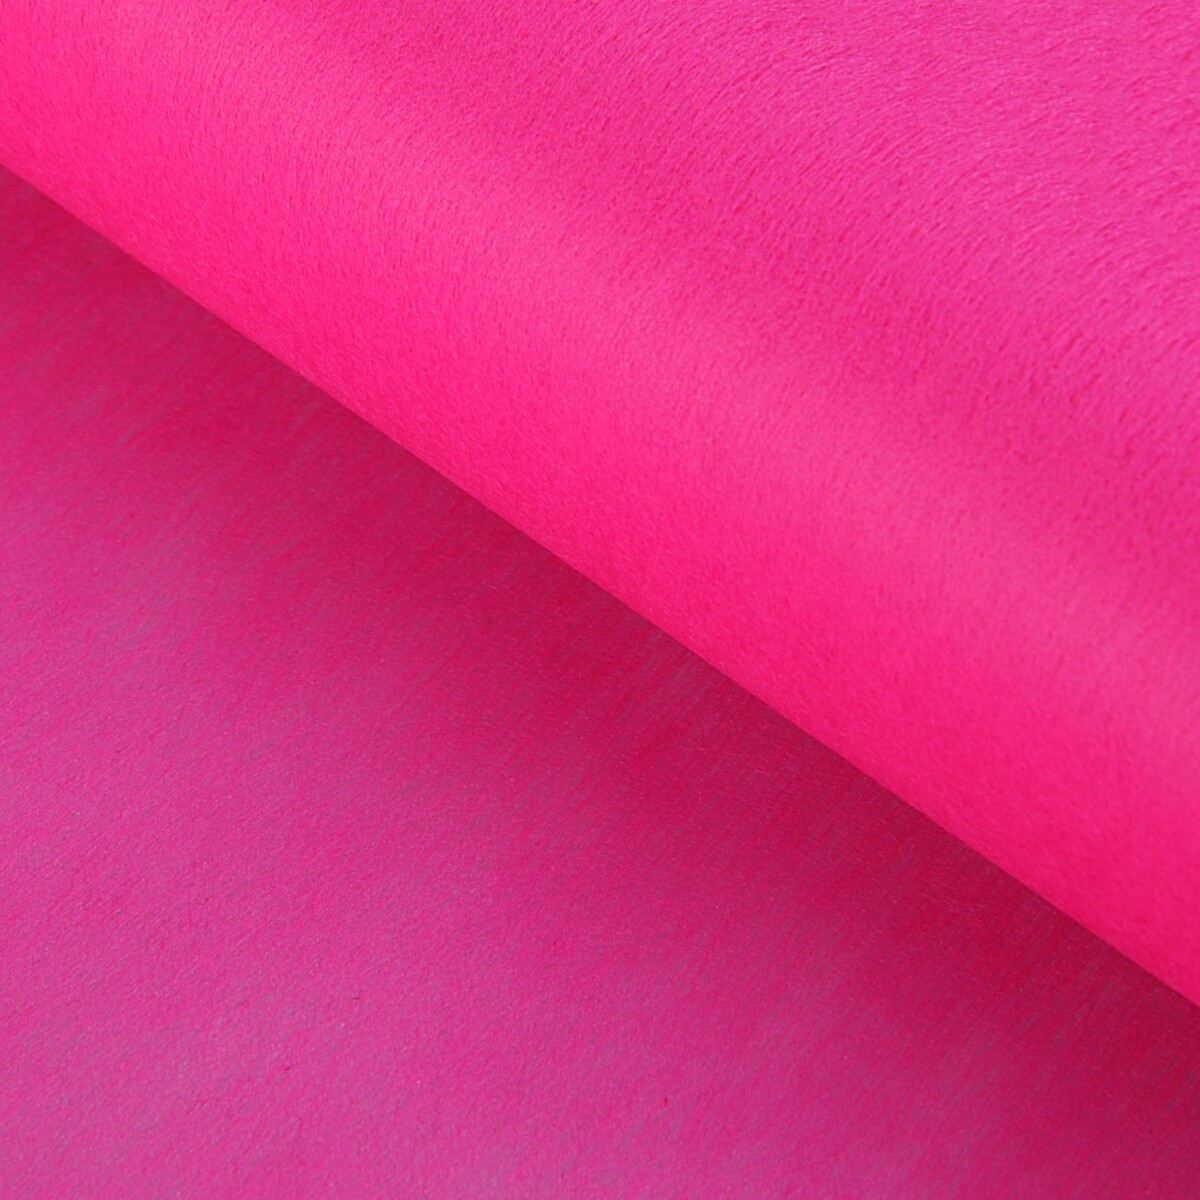 Фетр для упаковок и поделок, однотонный, ярко-розовый, однотонный, двусторонний, рулон 1шт., 50 см x 15 м массажёр для лица и зоны декольте 14 5 × 5 5 см двусторонний розовый кварц